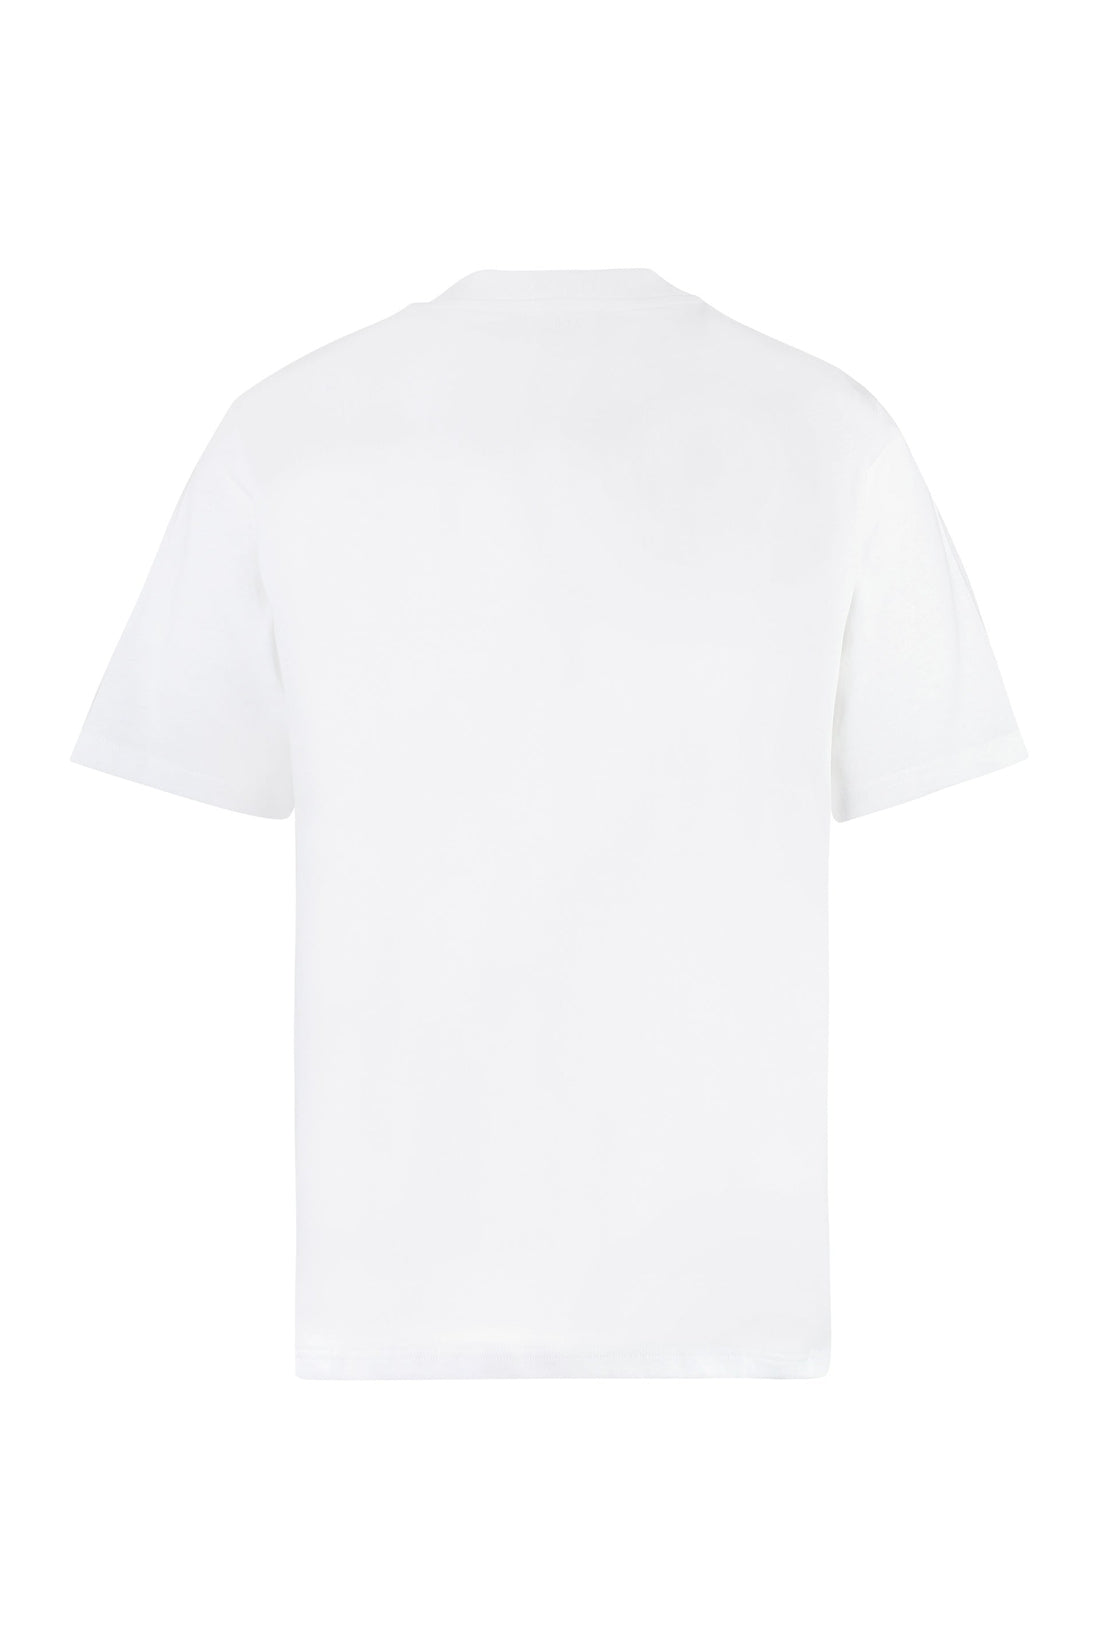 AMI PARIS-OUTLET-SALE-Logo cotton t-shirt-ARCHIVIST